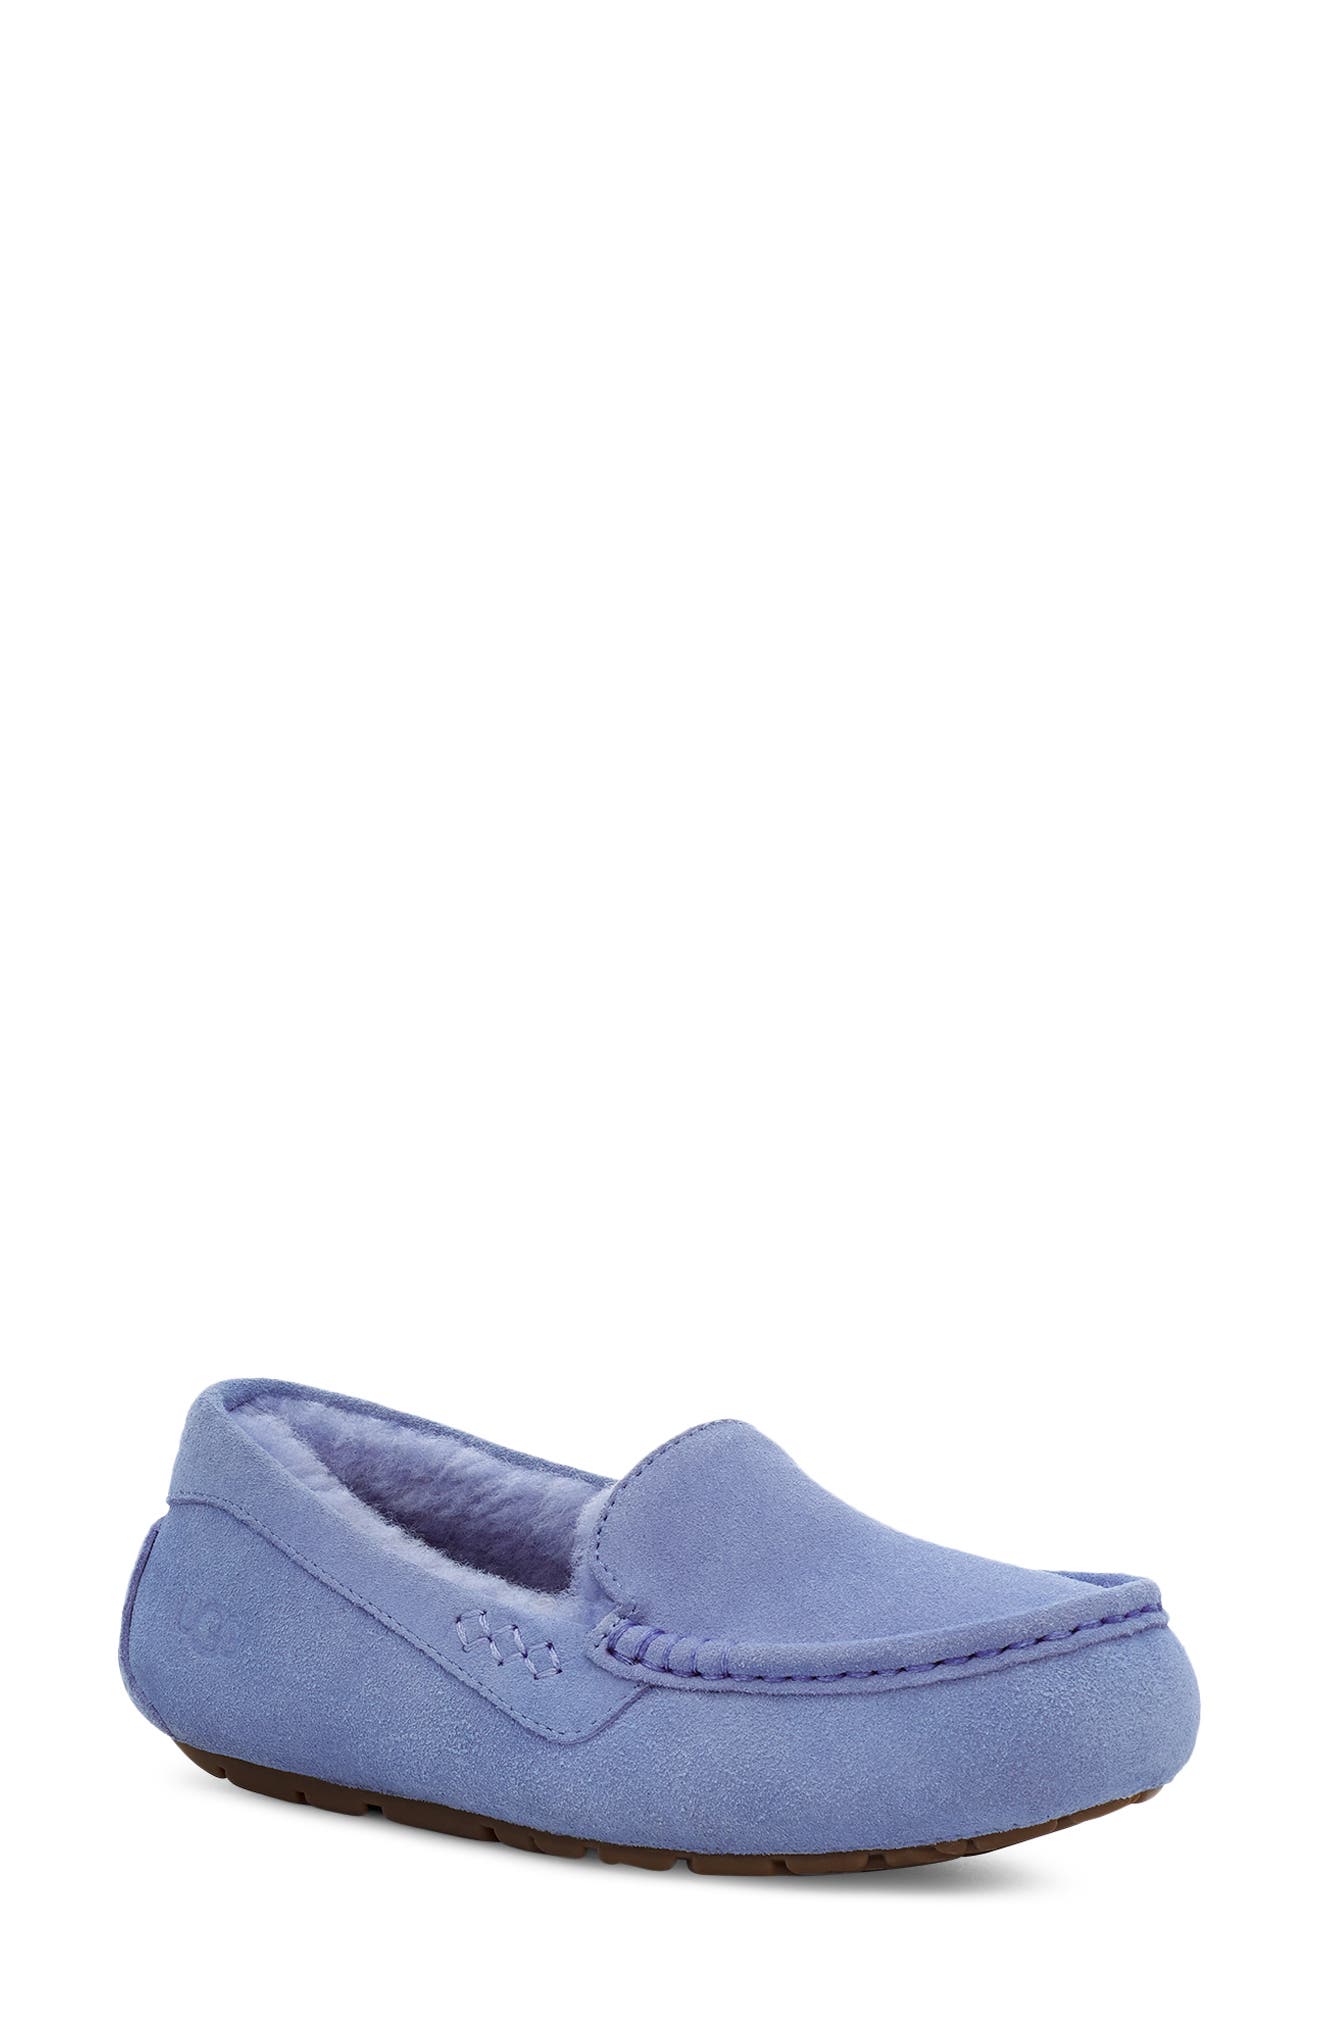 royal blue ugg sandals